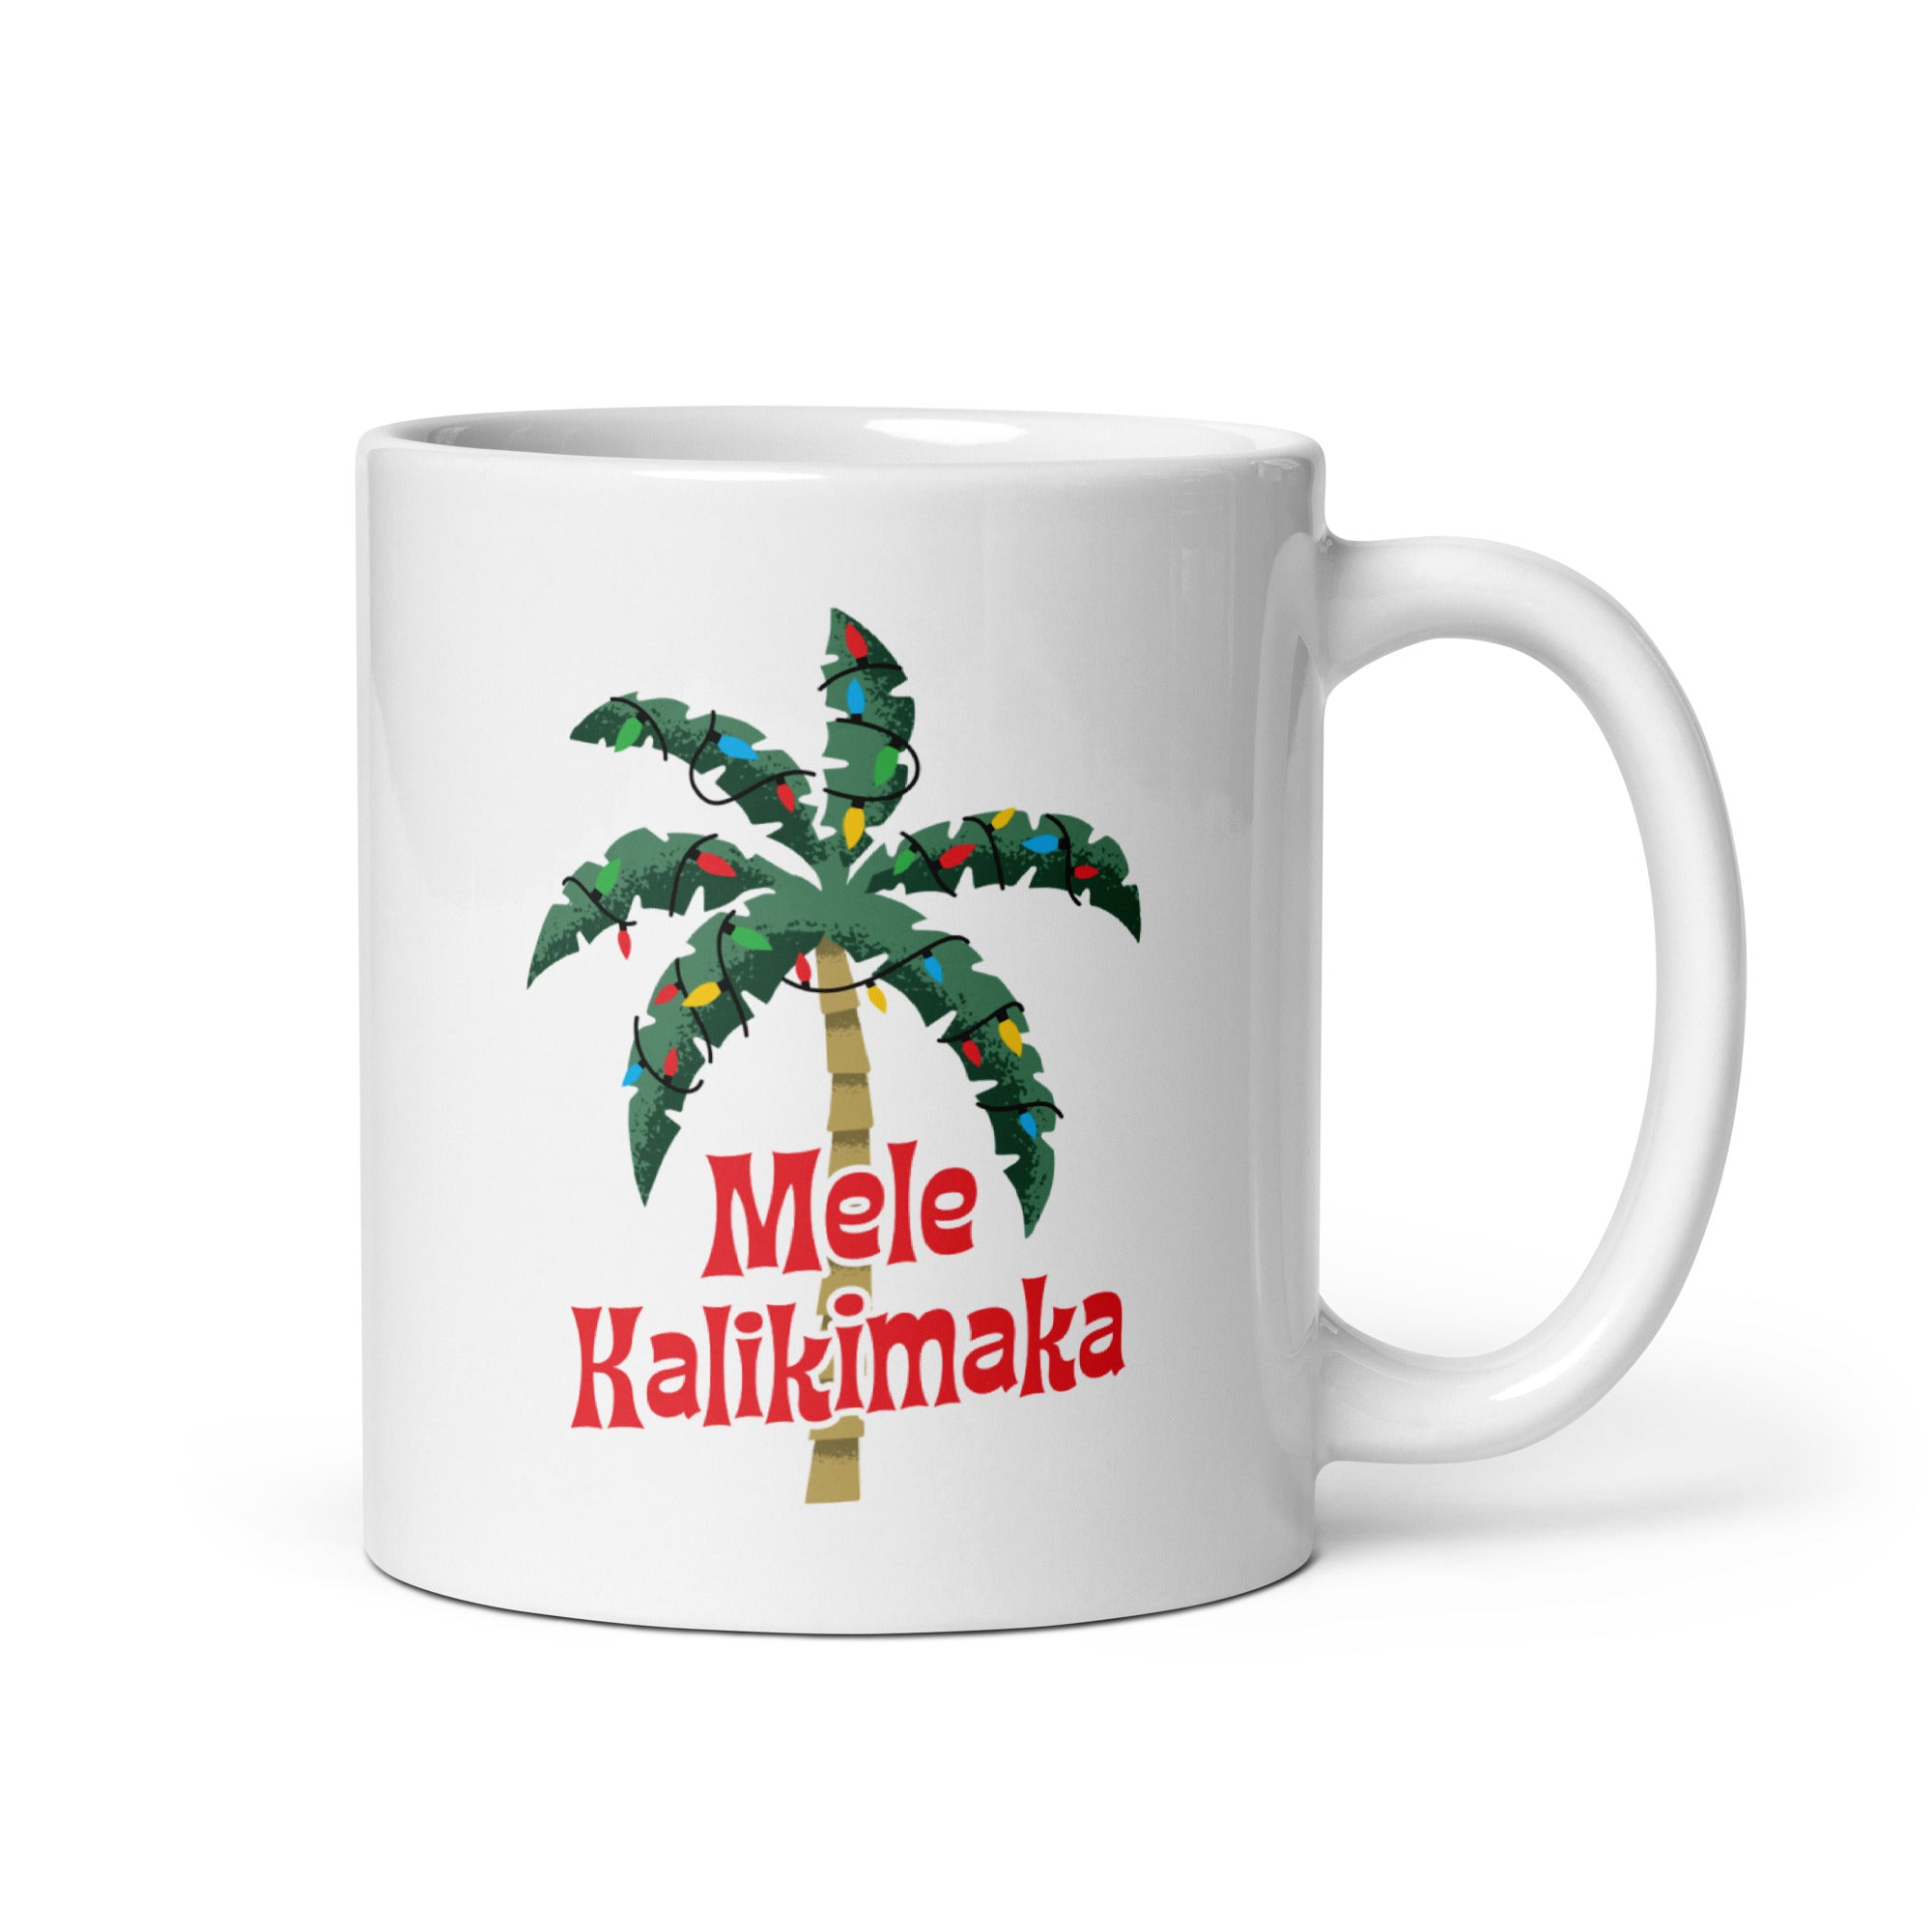 Mele Kalikimaka - 11oz Coffee Mug